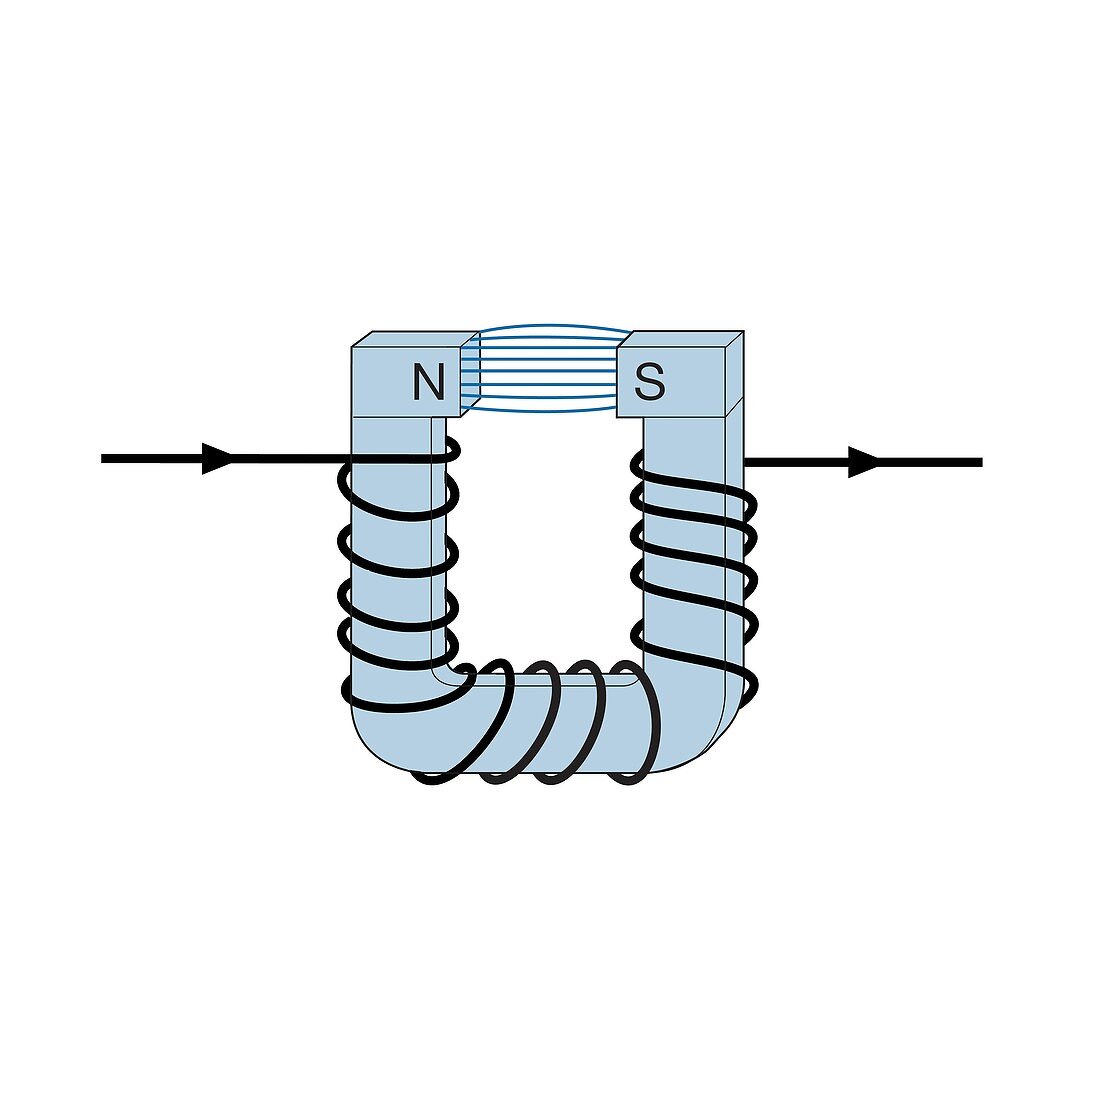 Electromagnet, illustration